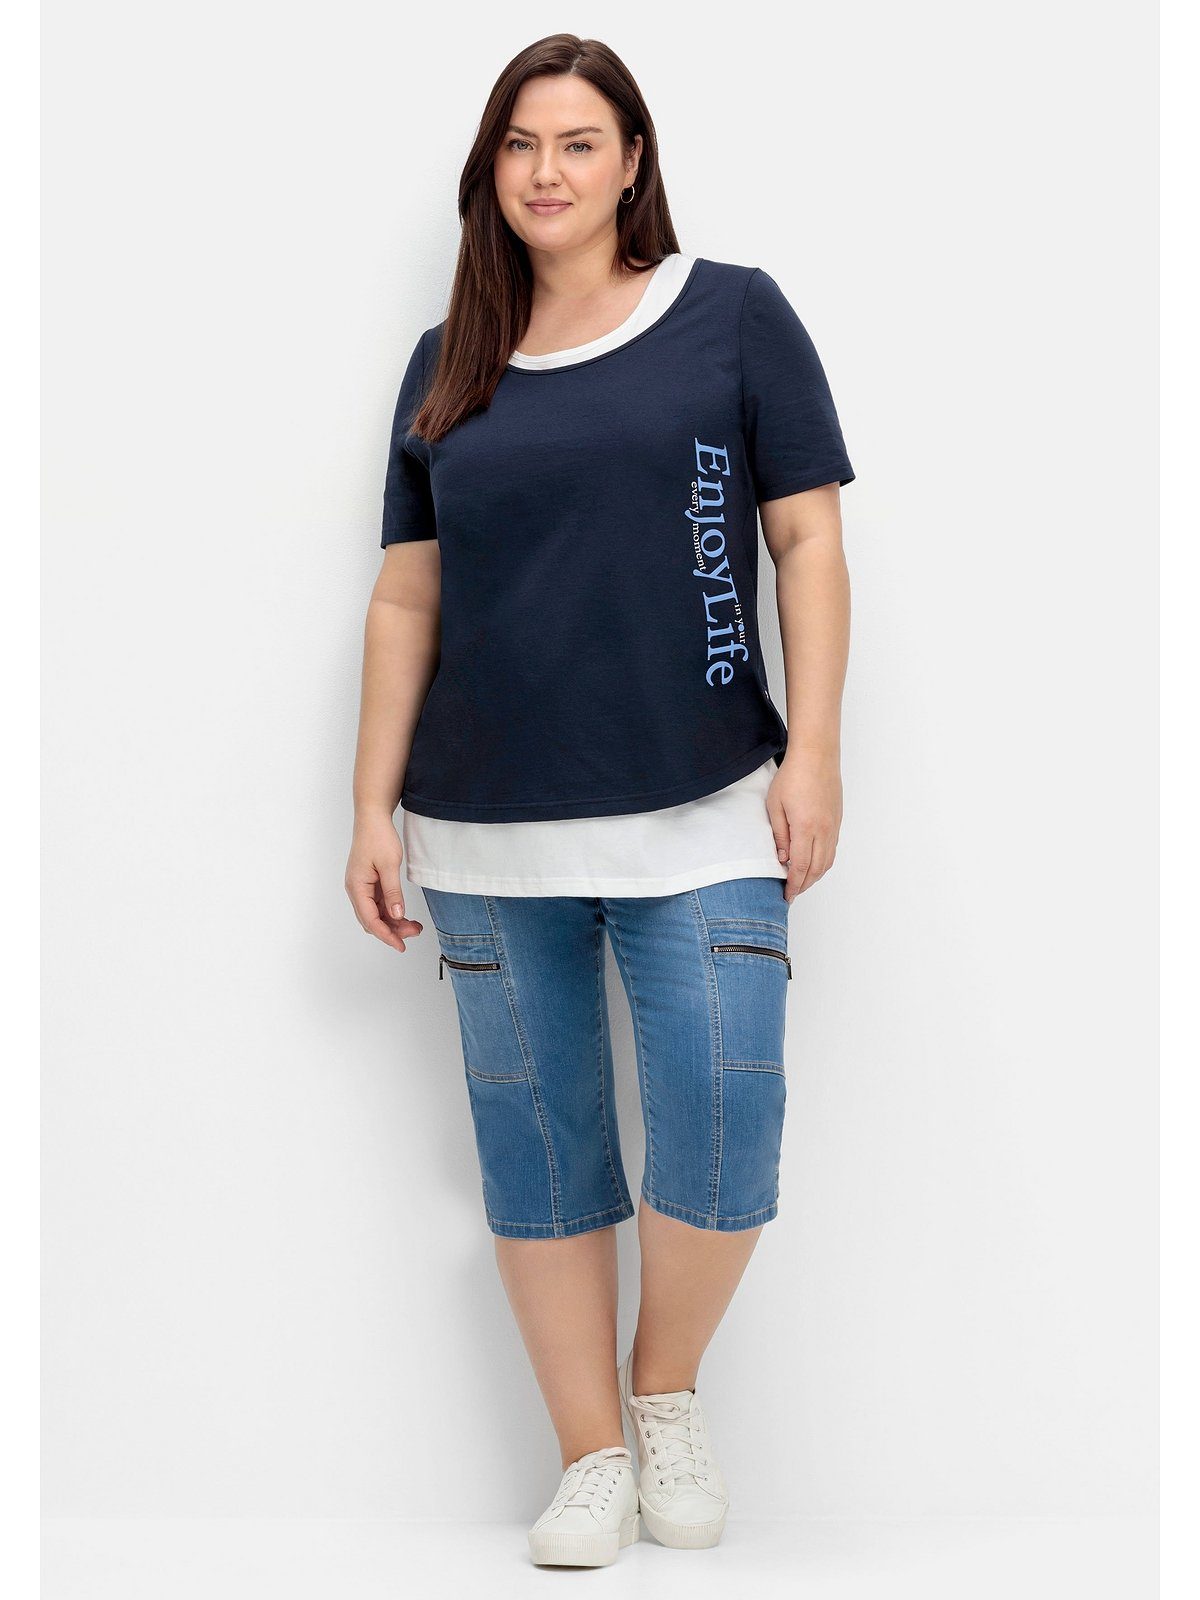 Wordingprint Sheego Top T-Shirt Große Größen separatem und mit